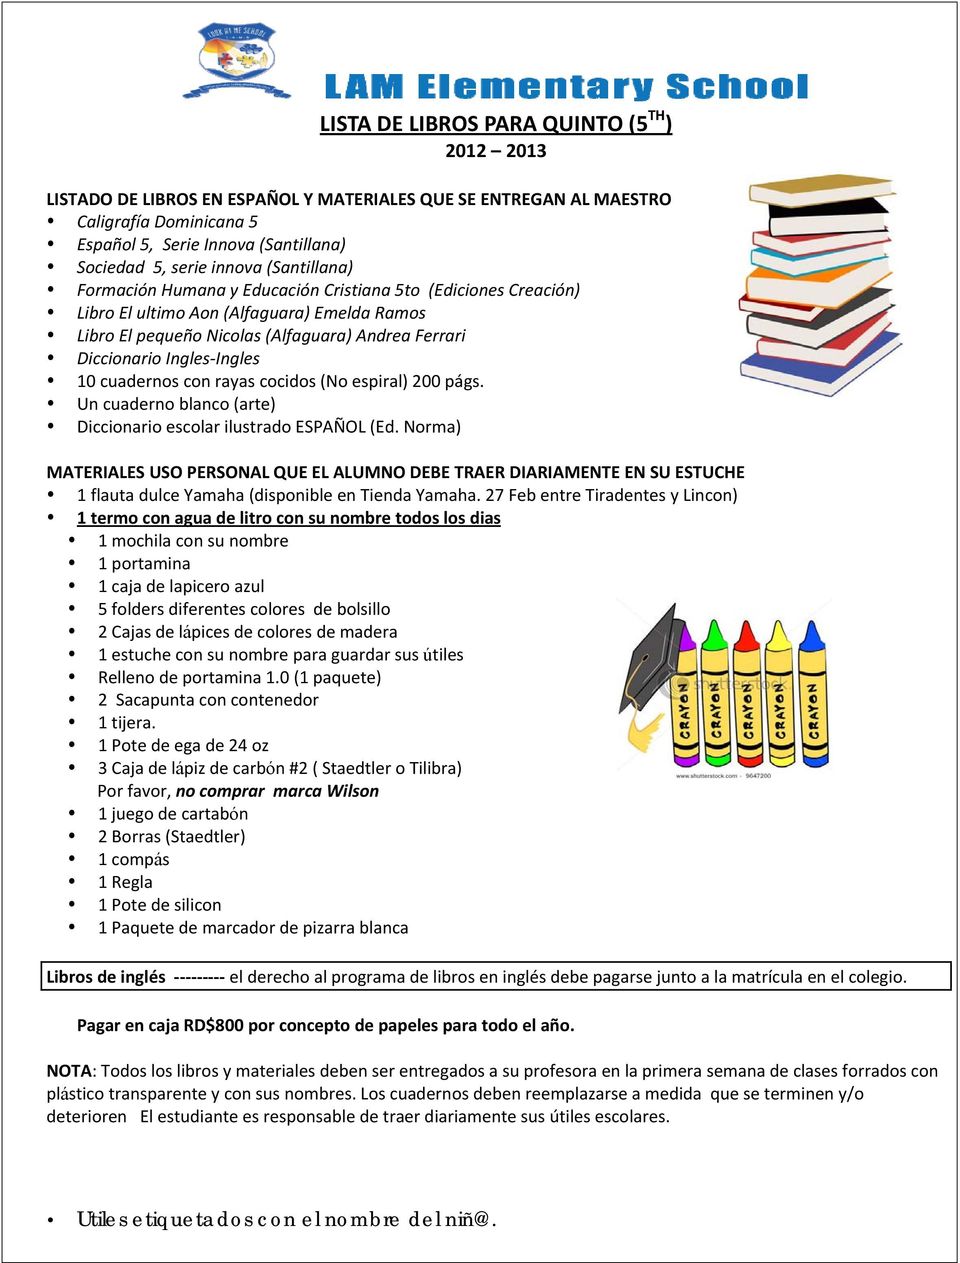 Un cuaderno blanco (arte) Diccionario escolar ilustrado ESPAÑOL (Ed.